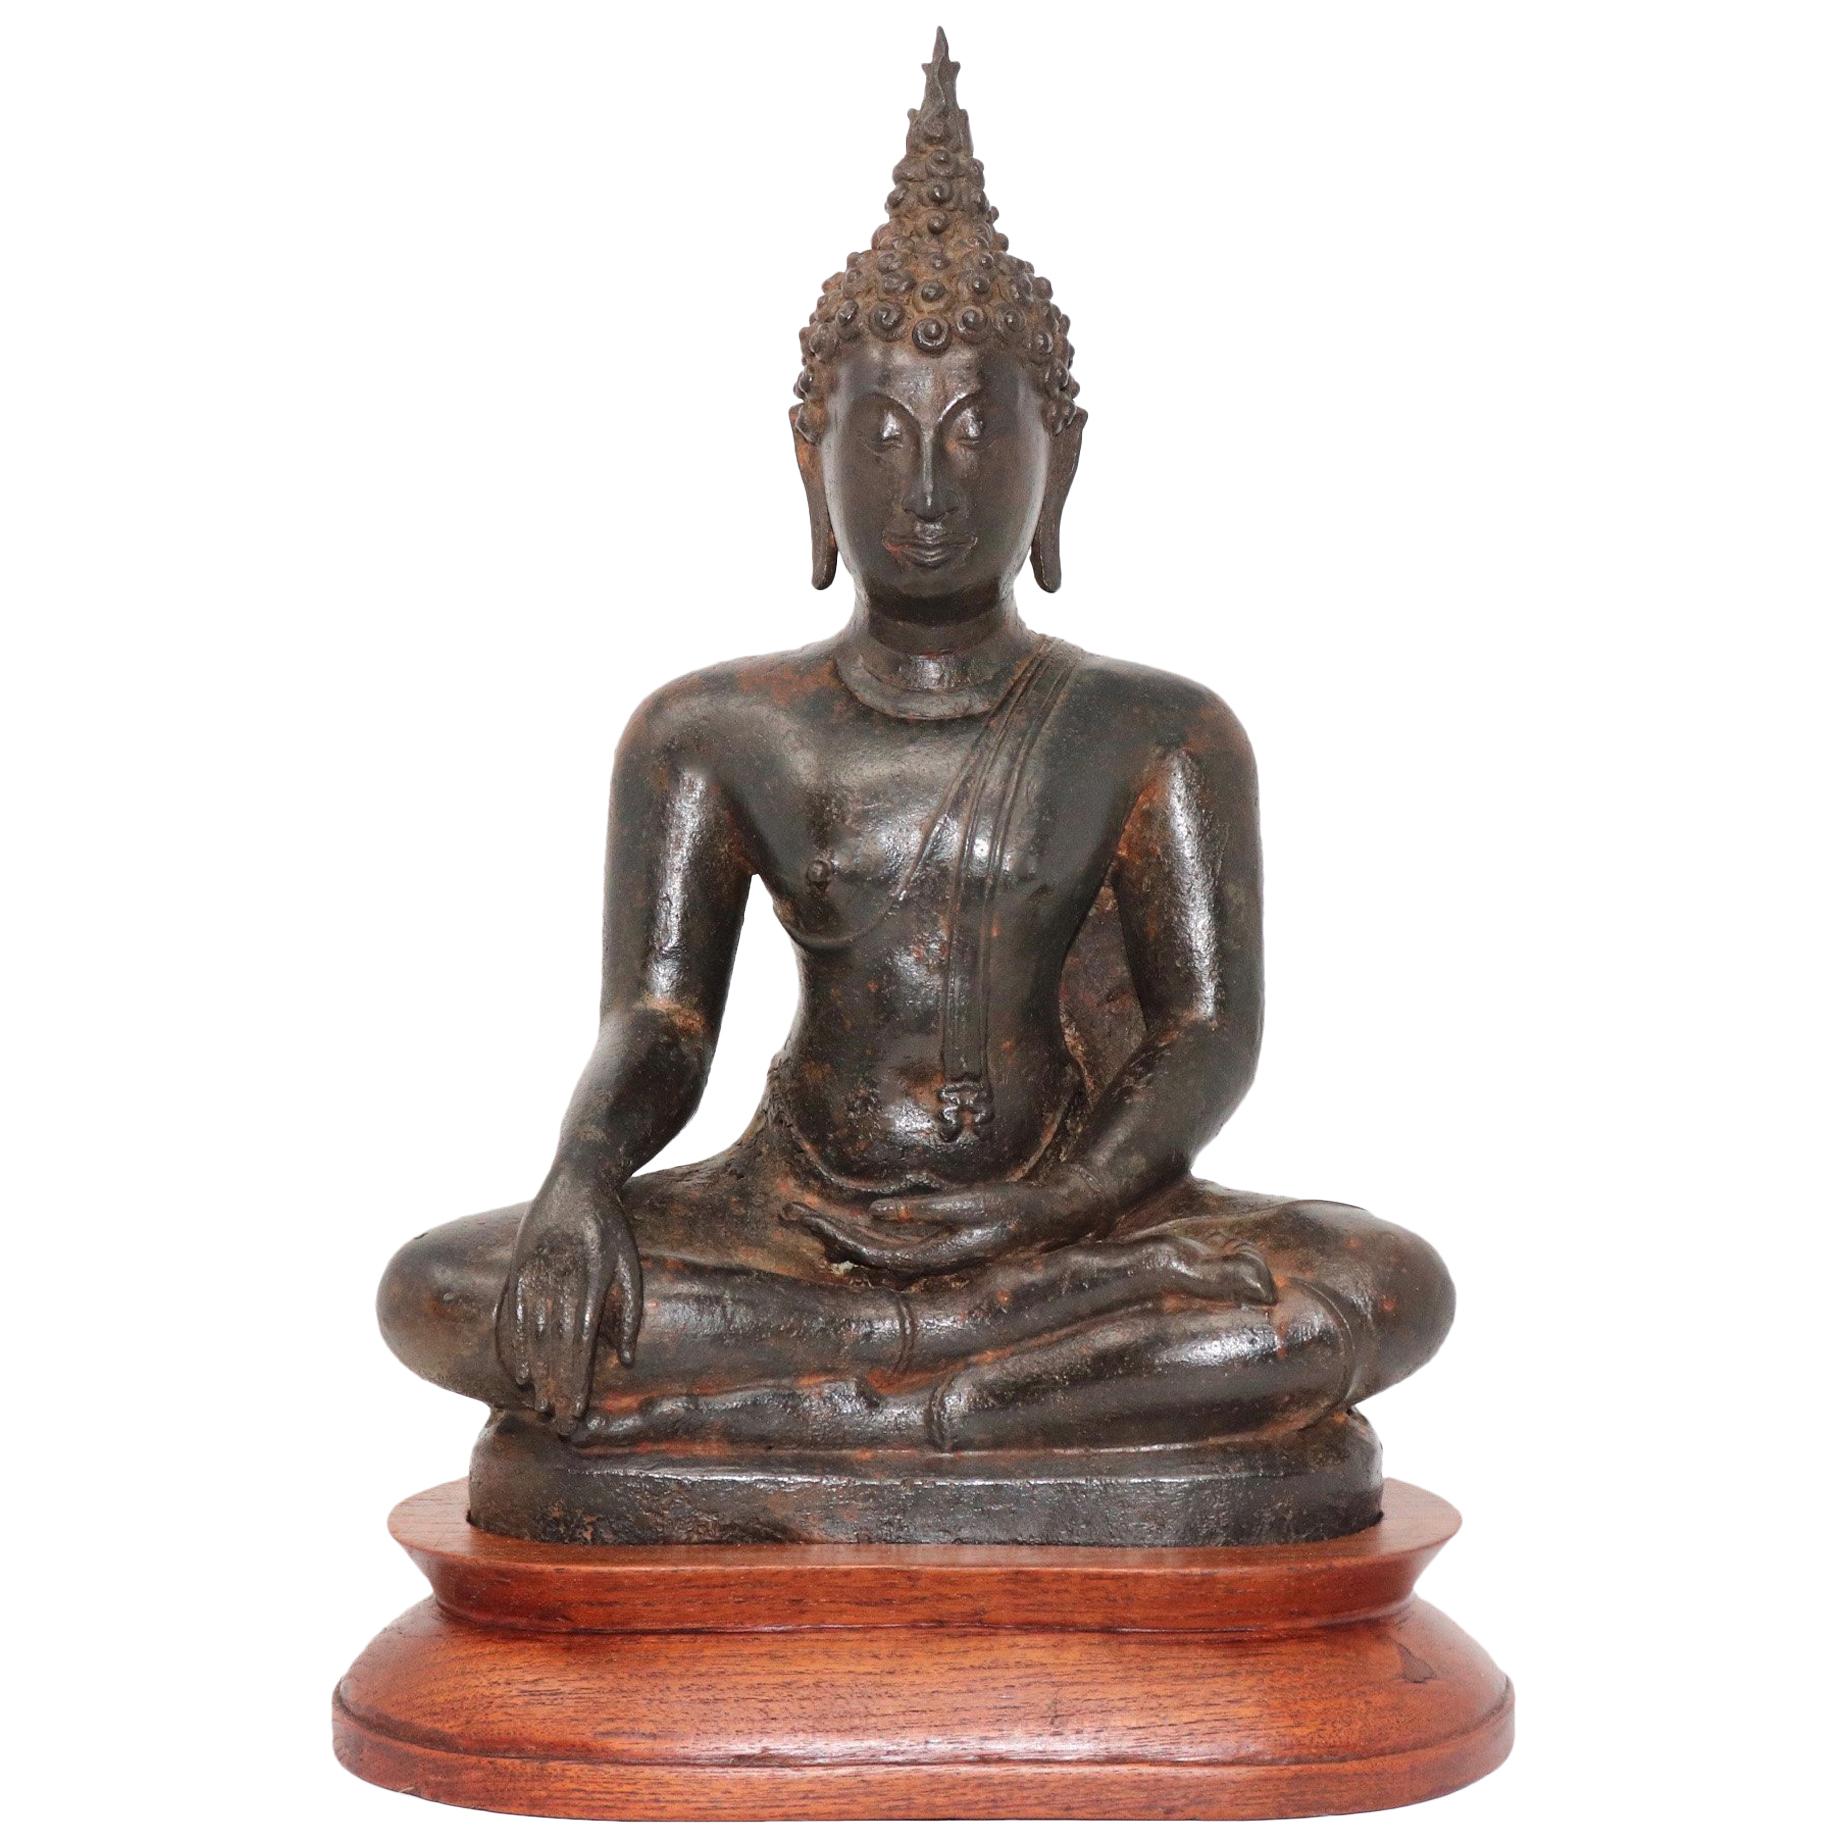 Thai Ayutthaya Bronze Seated Buddha Figure, 14th-15th Century